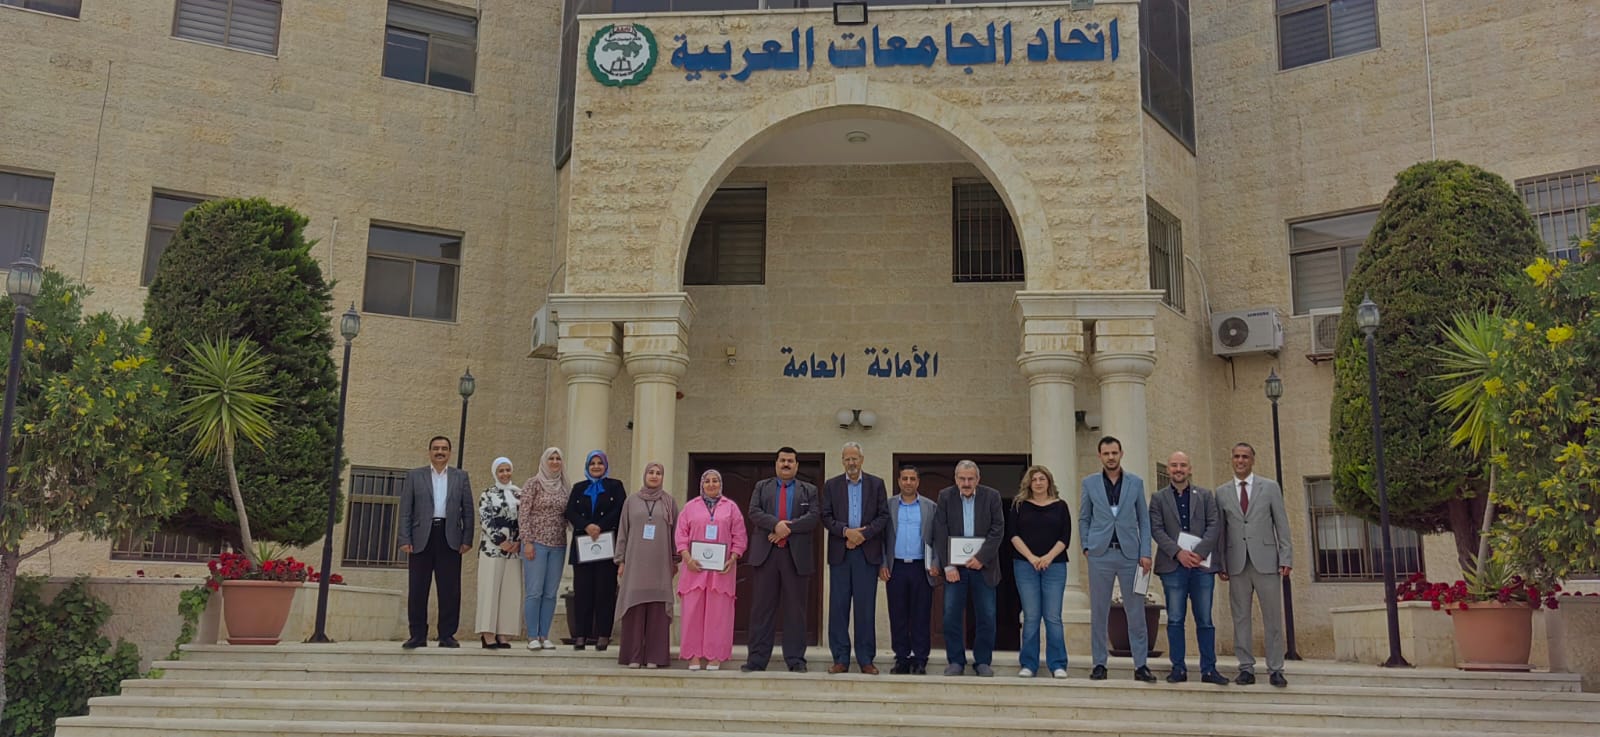 معهد التدريب والاستشارات الصناعية ينظم دورتين تدريبيتين بمقر اتحاد الجامعات العربية بالعاصمة الاردنية عمان